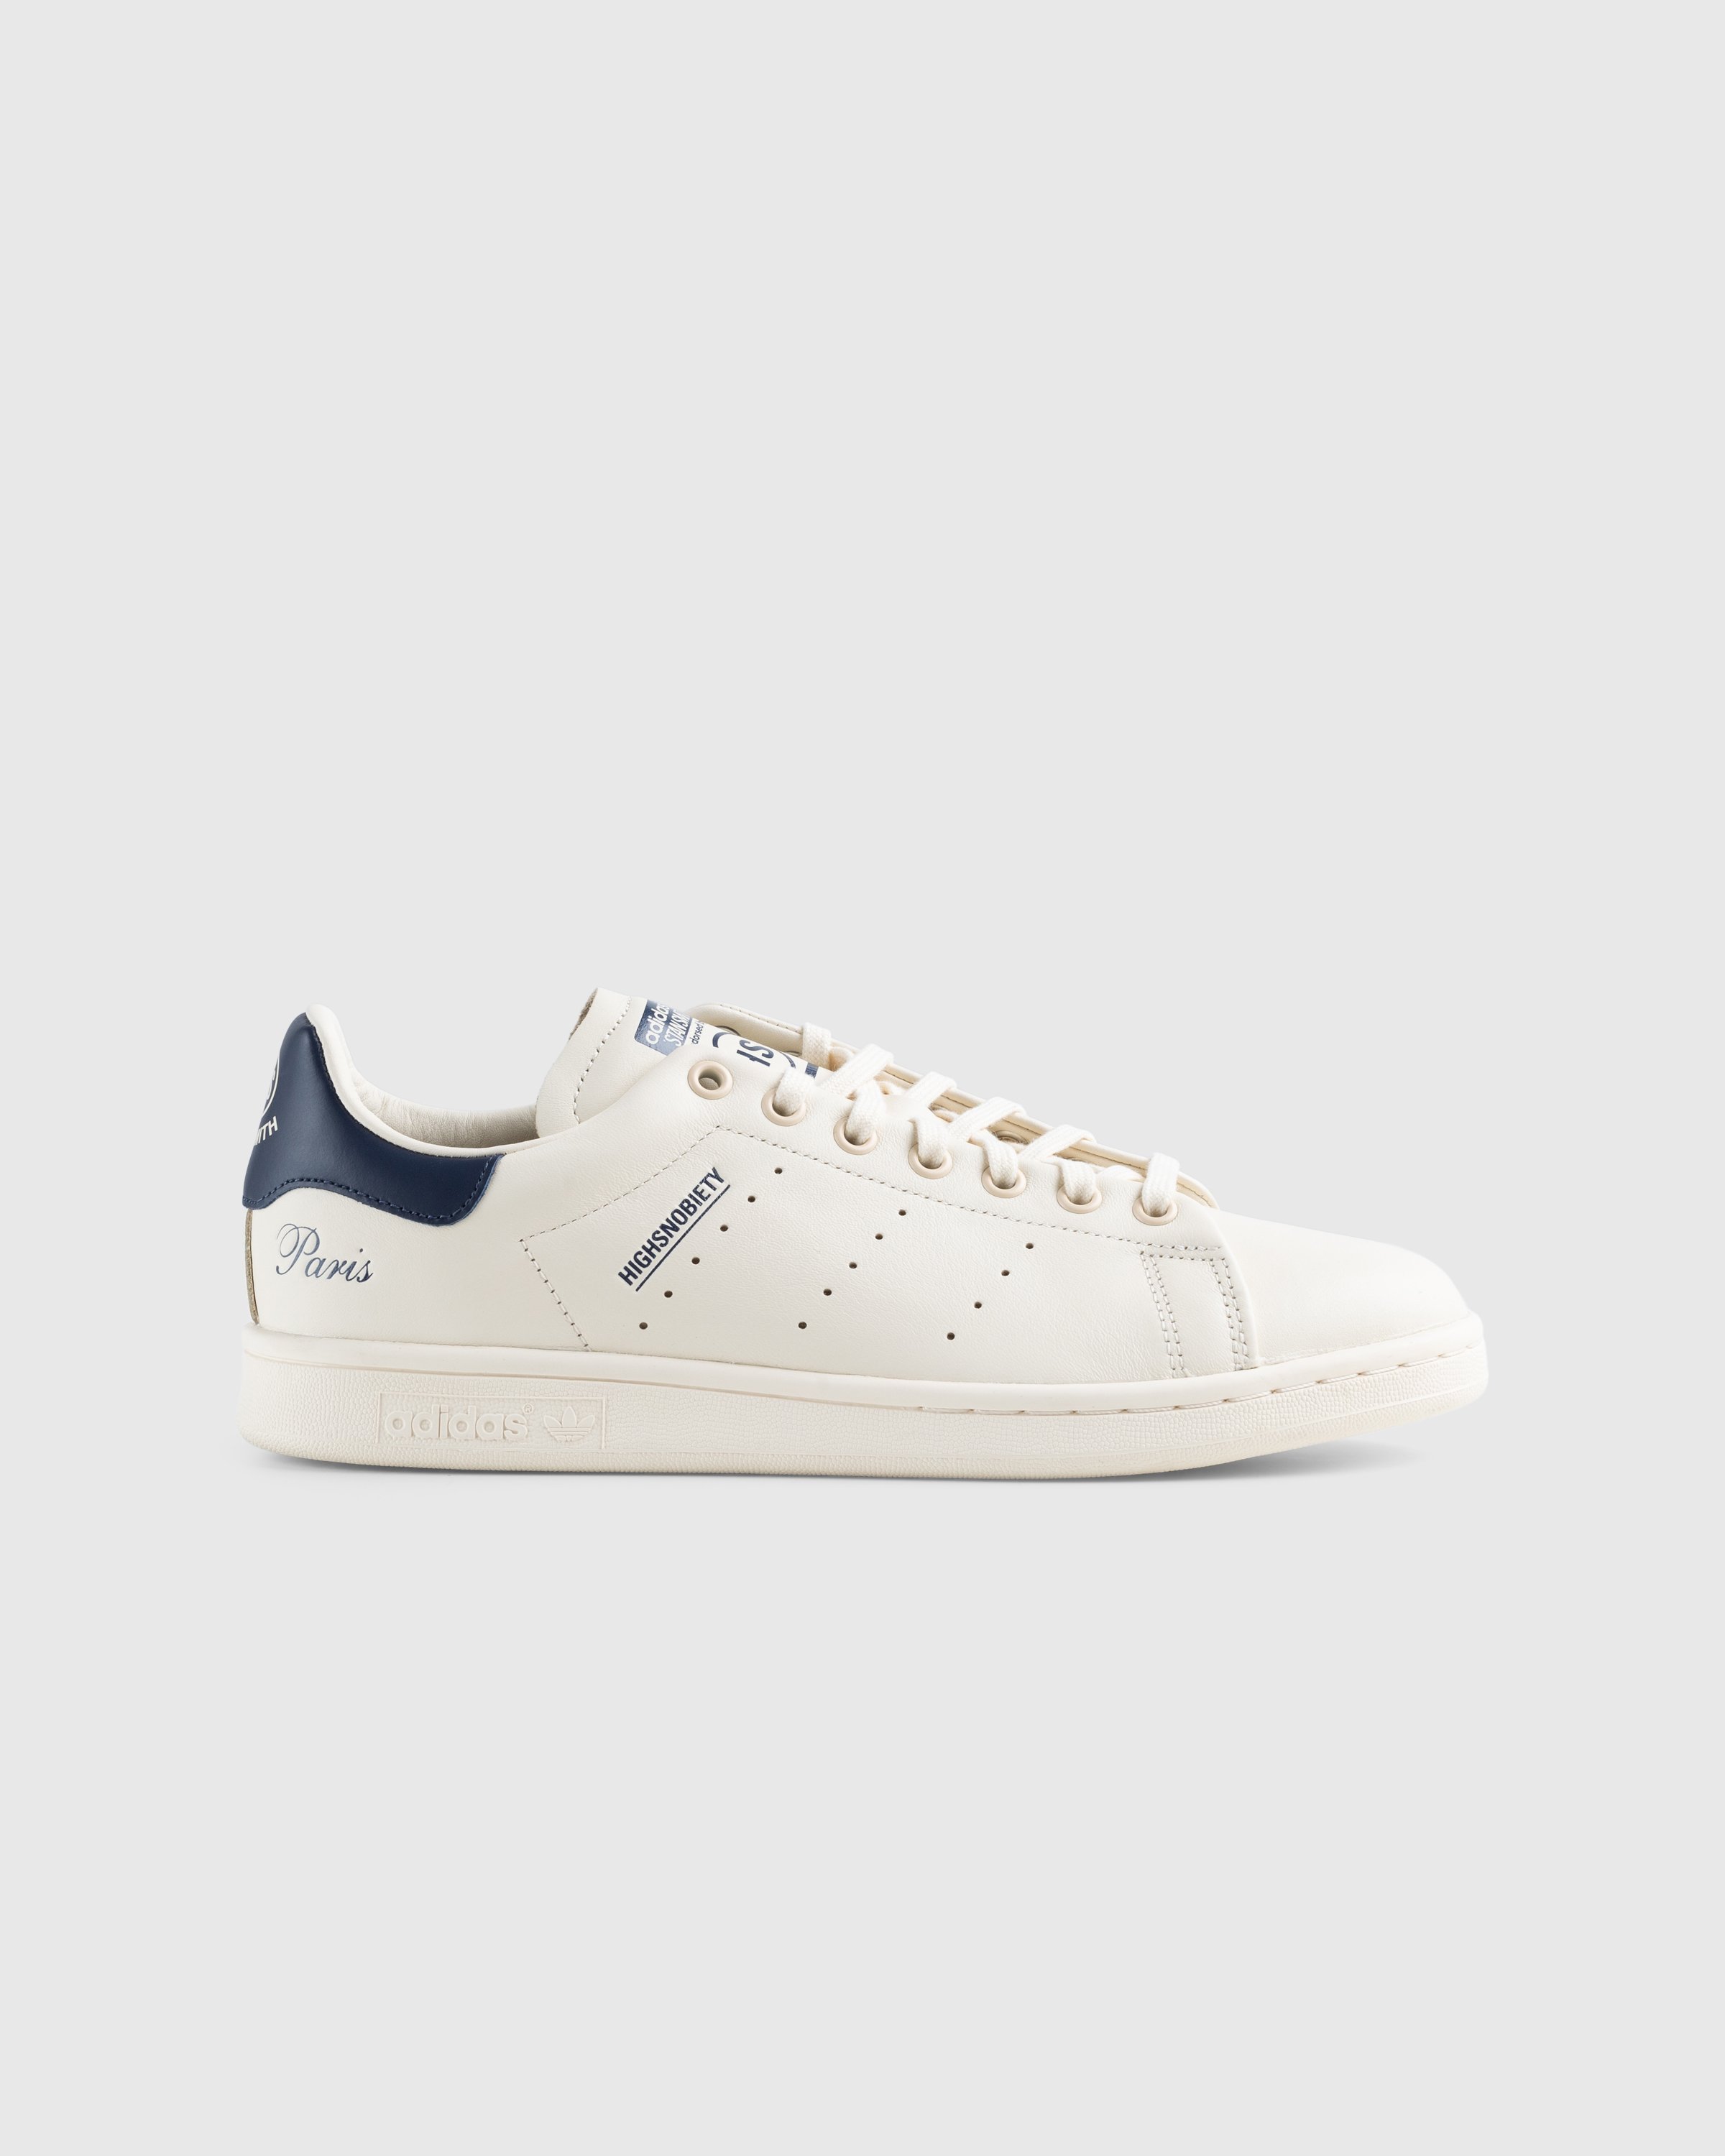 Adidas x Highsnobiety - Not In Paris Stan Smith Cream/Blue - Footwear - Beige - Image 1